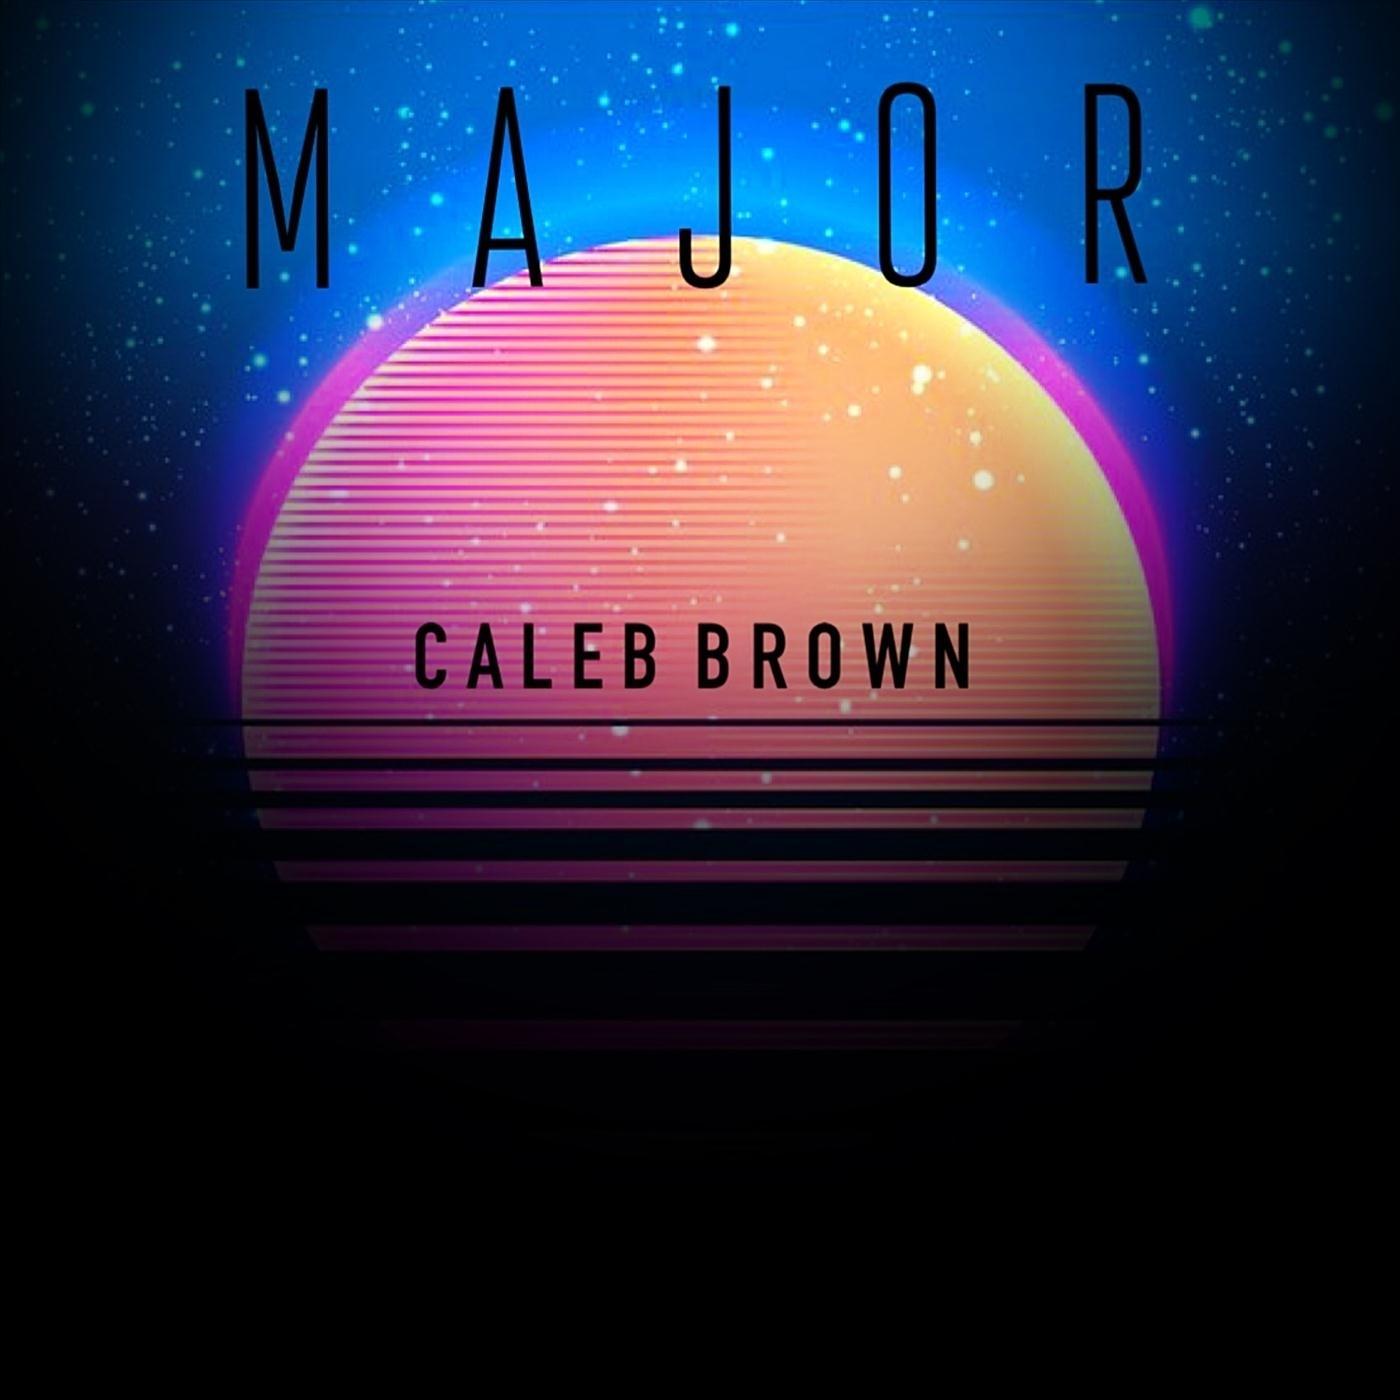 Caleb Brown - Major